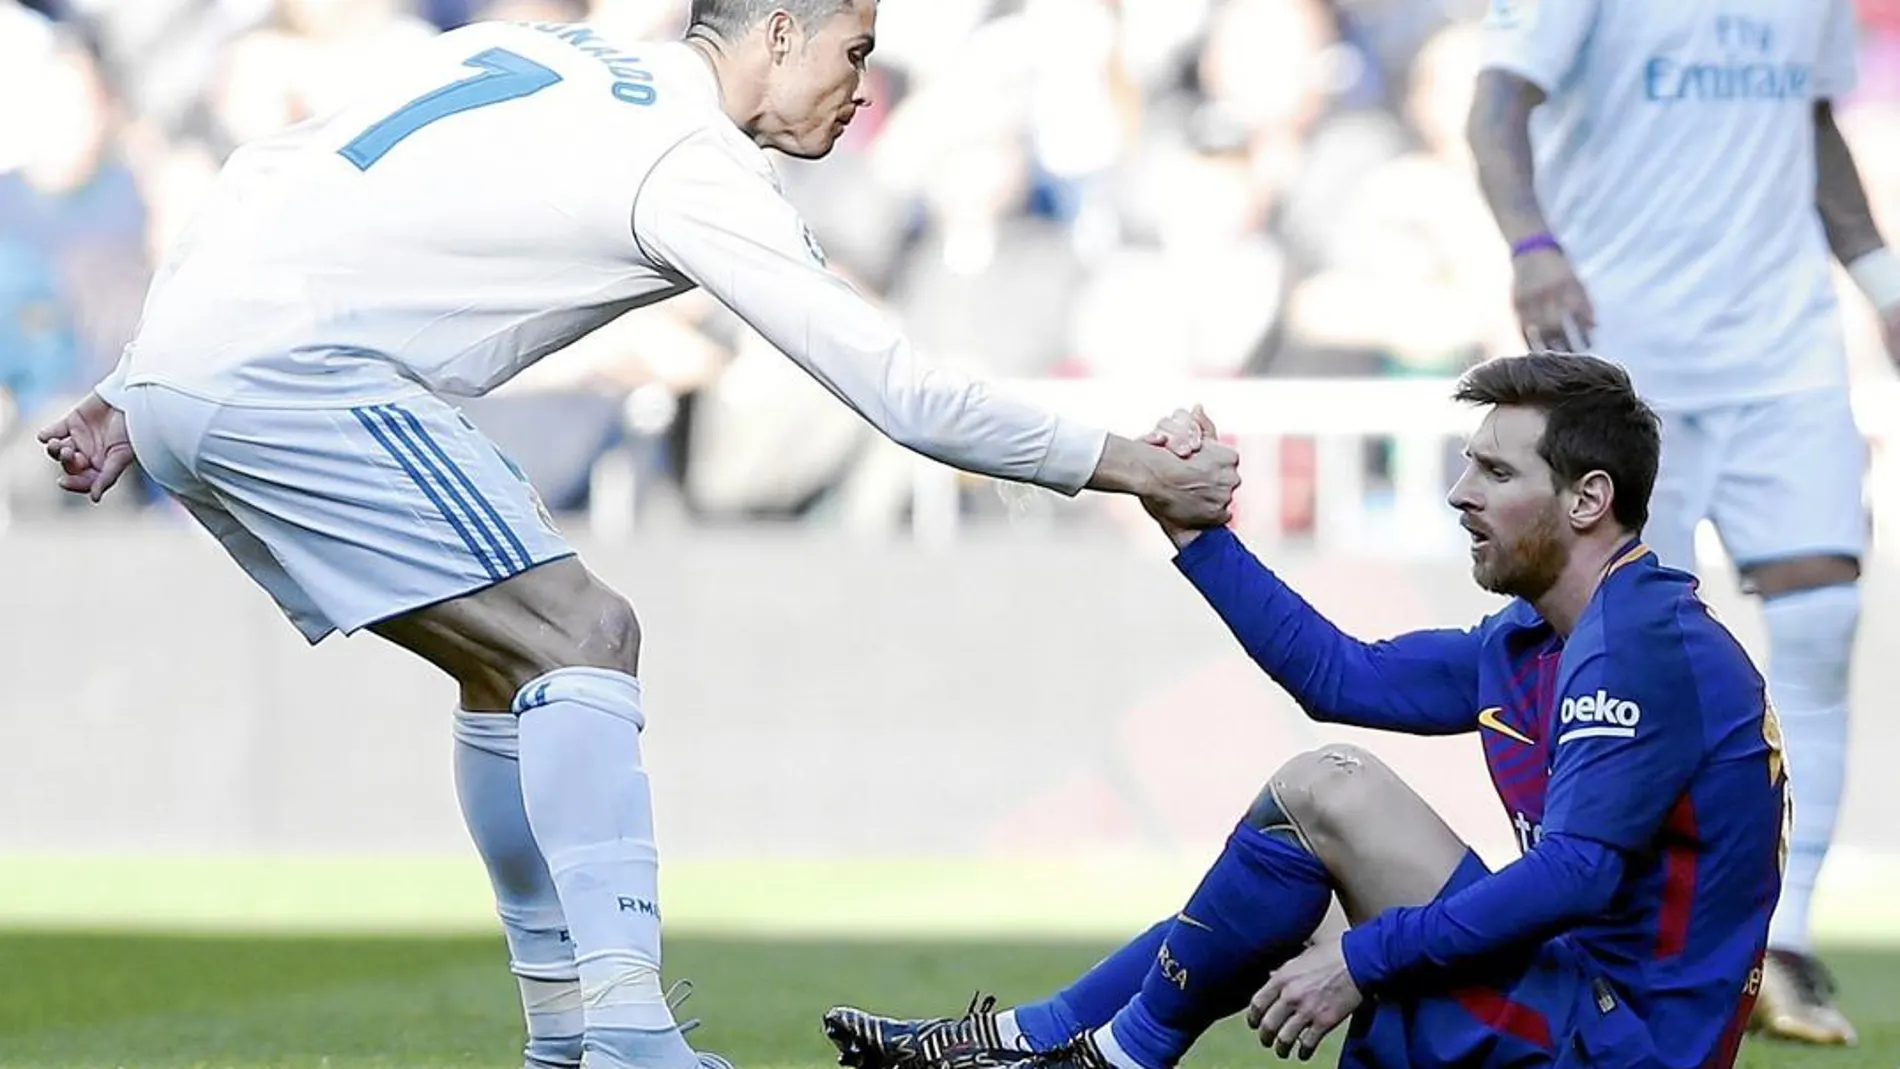 Cristiano ayuda a Messi a levantarse del suelo